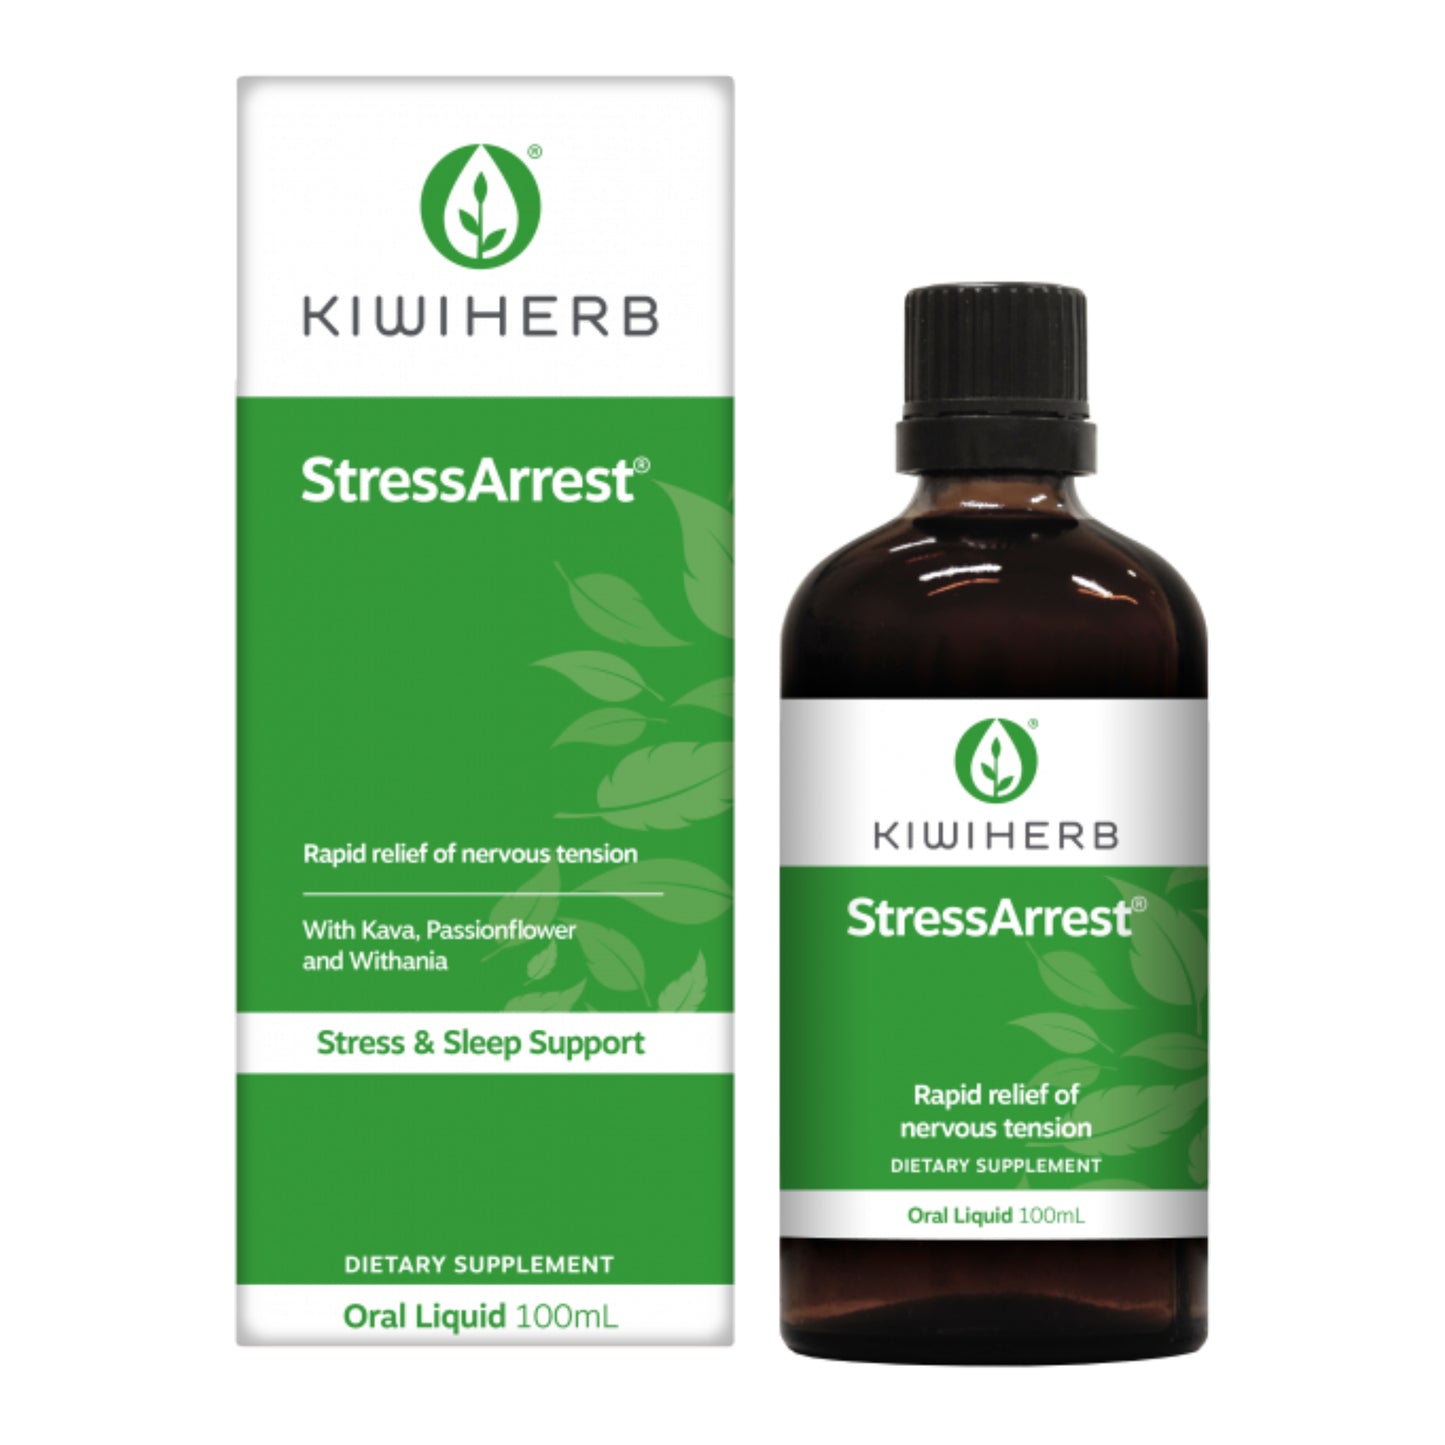 StressArrest